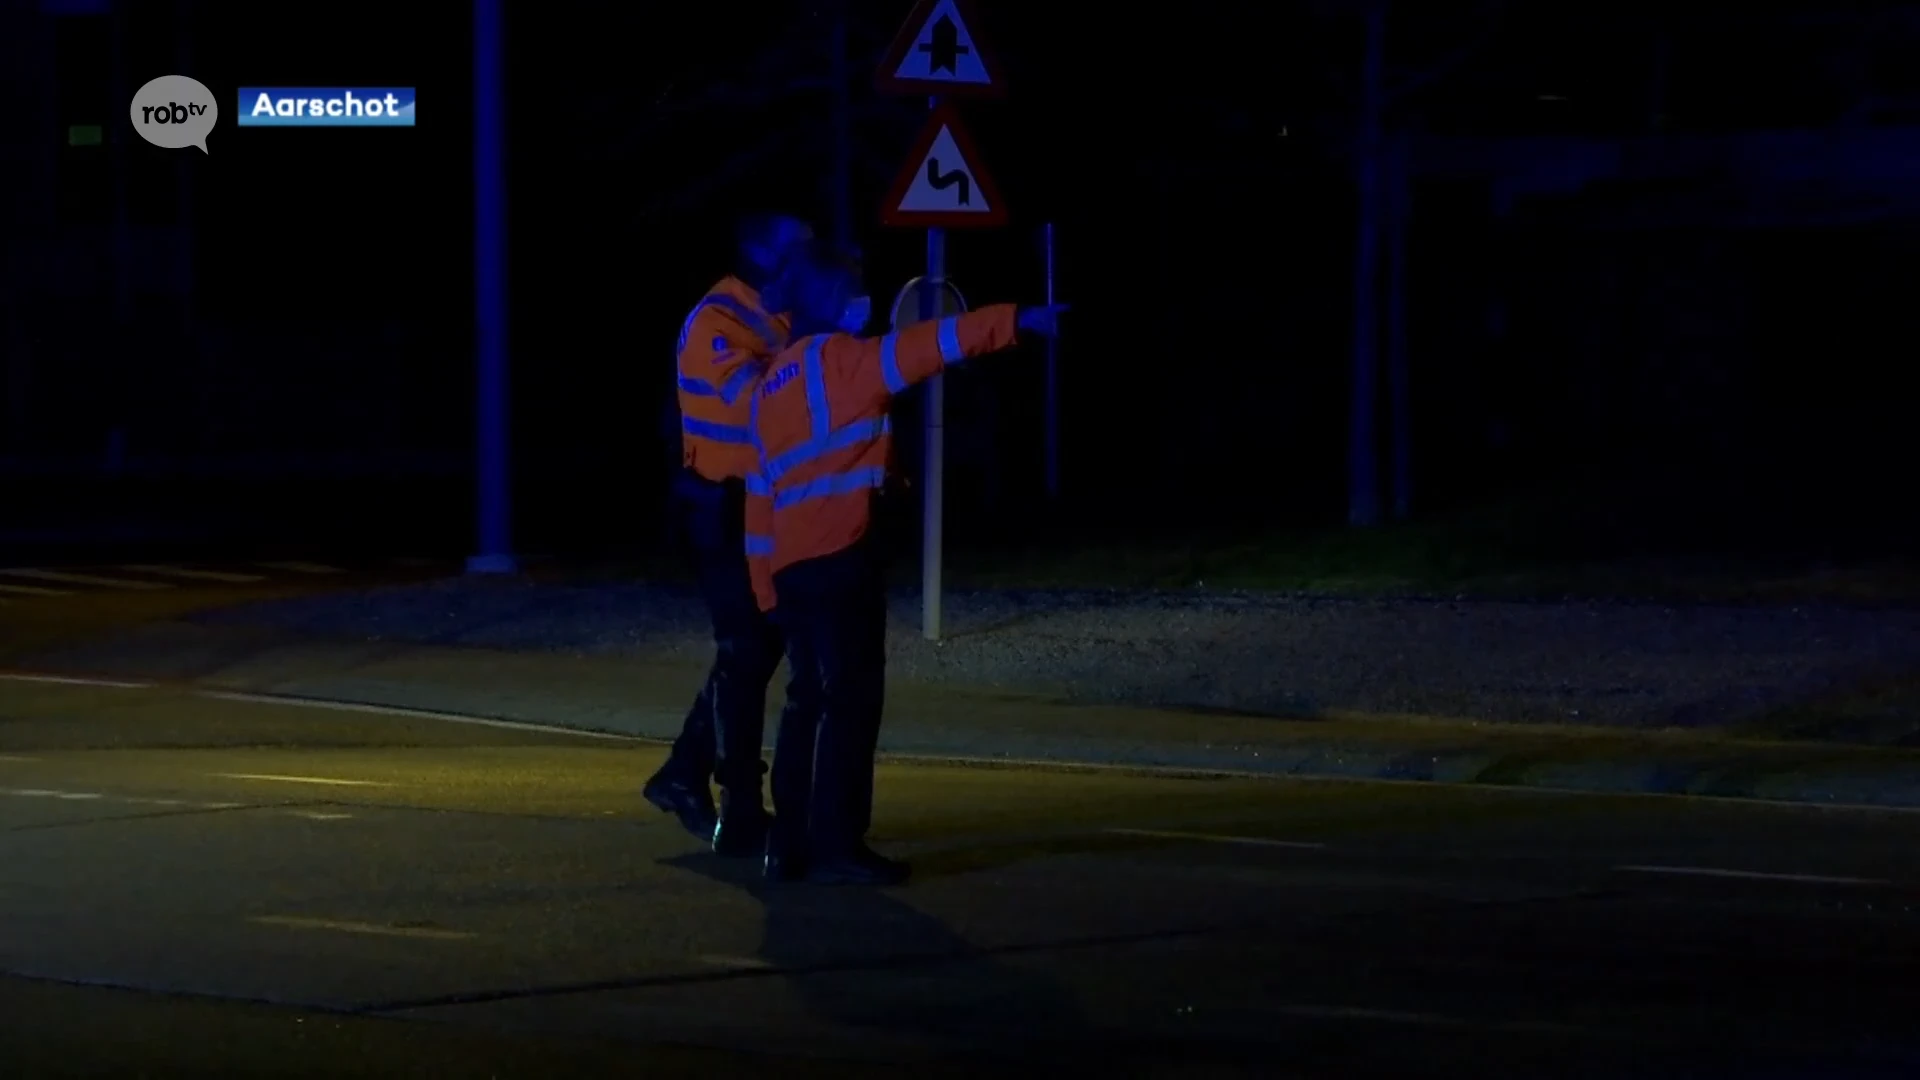 Stad Aarschot dringt aan op snelle aanpassing druk kruispunt in Gelrode na zwaar ongeval met fietser